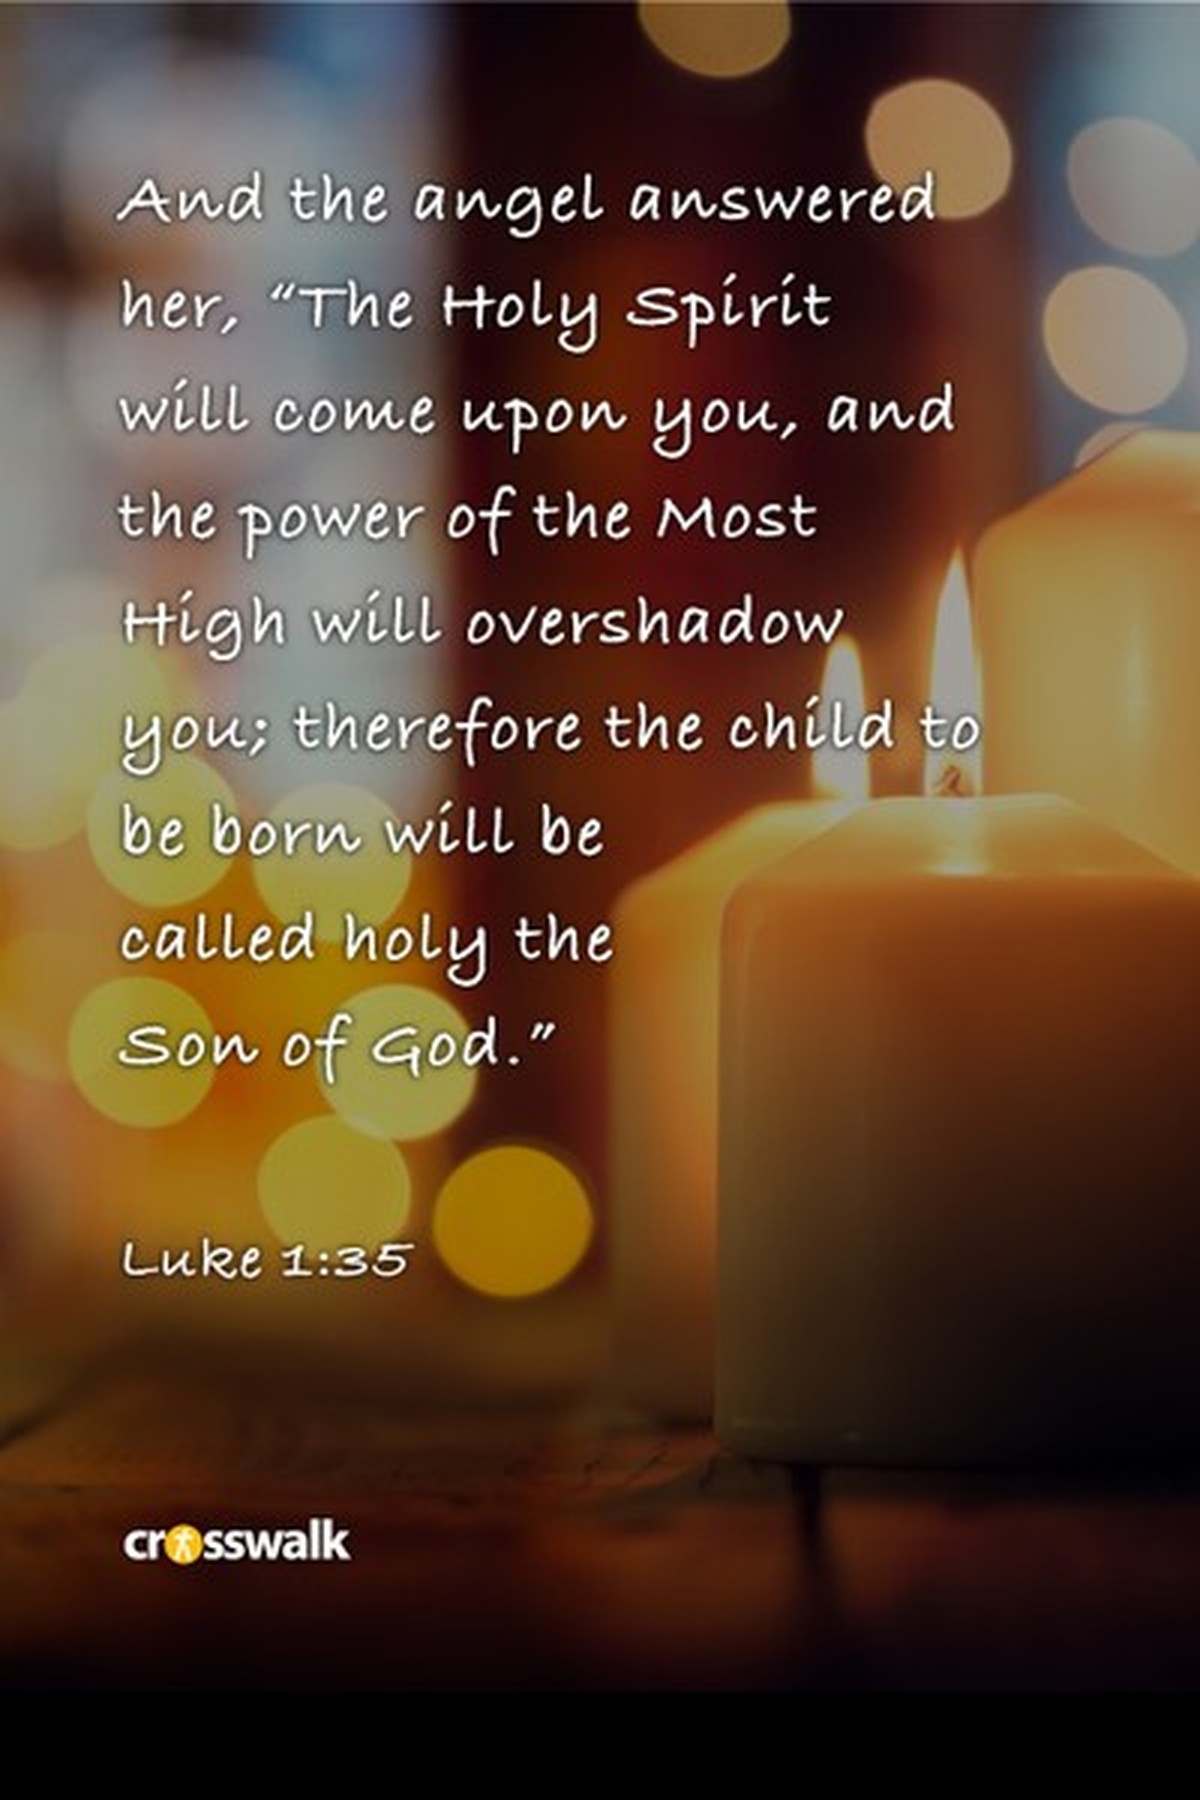 Luke 1:35